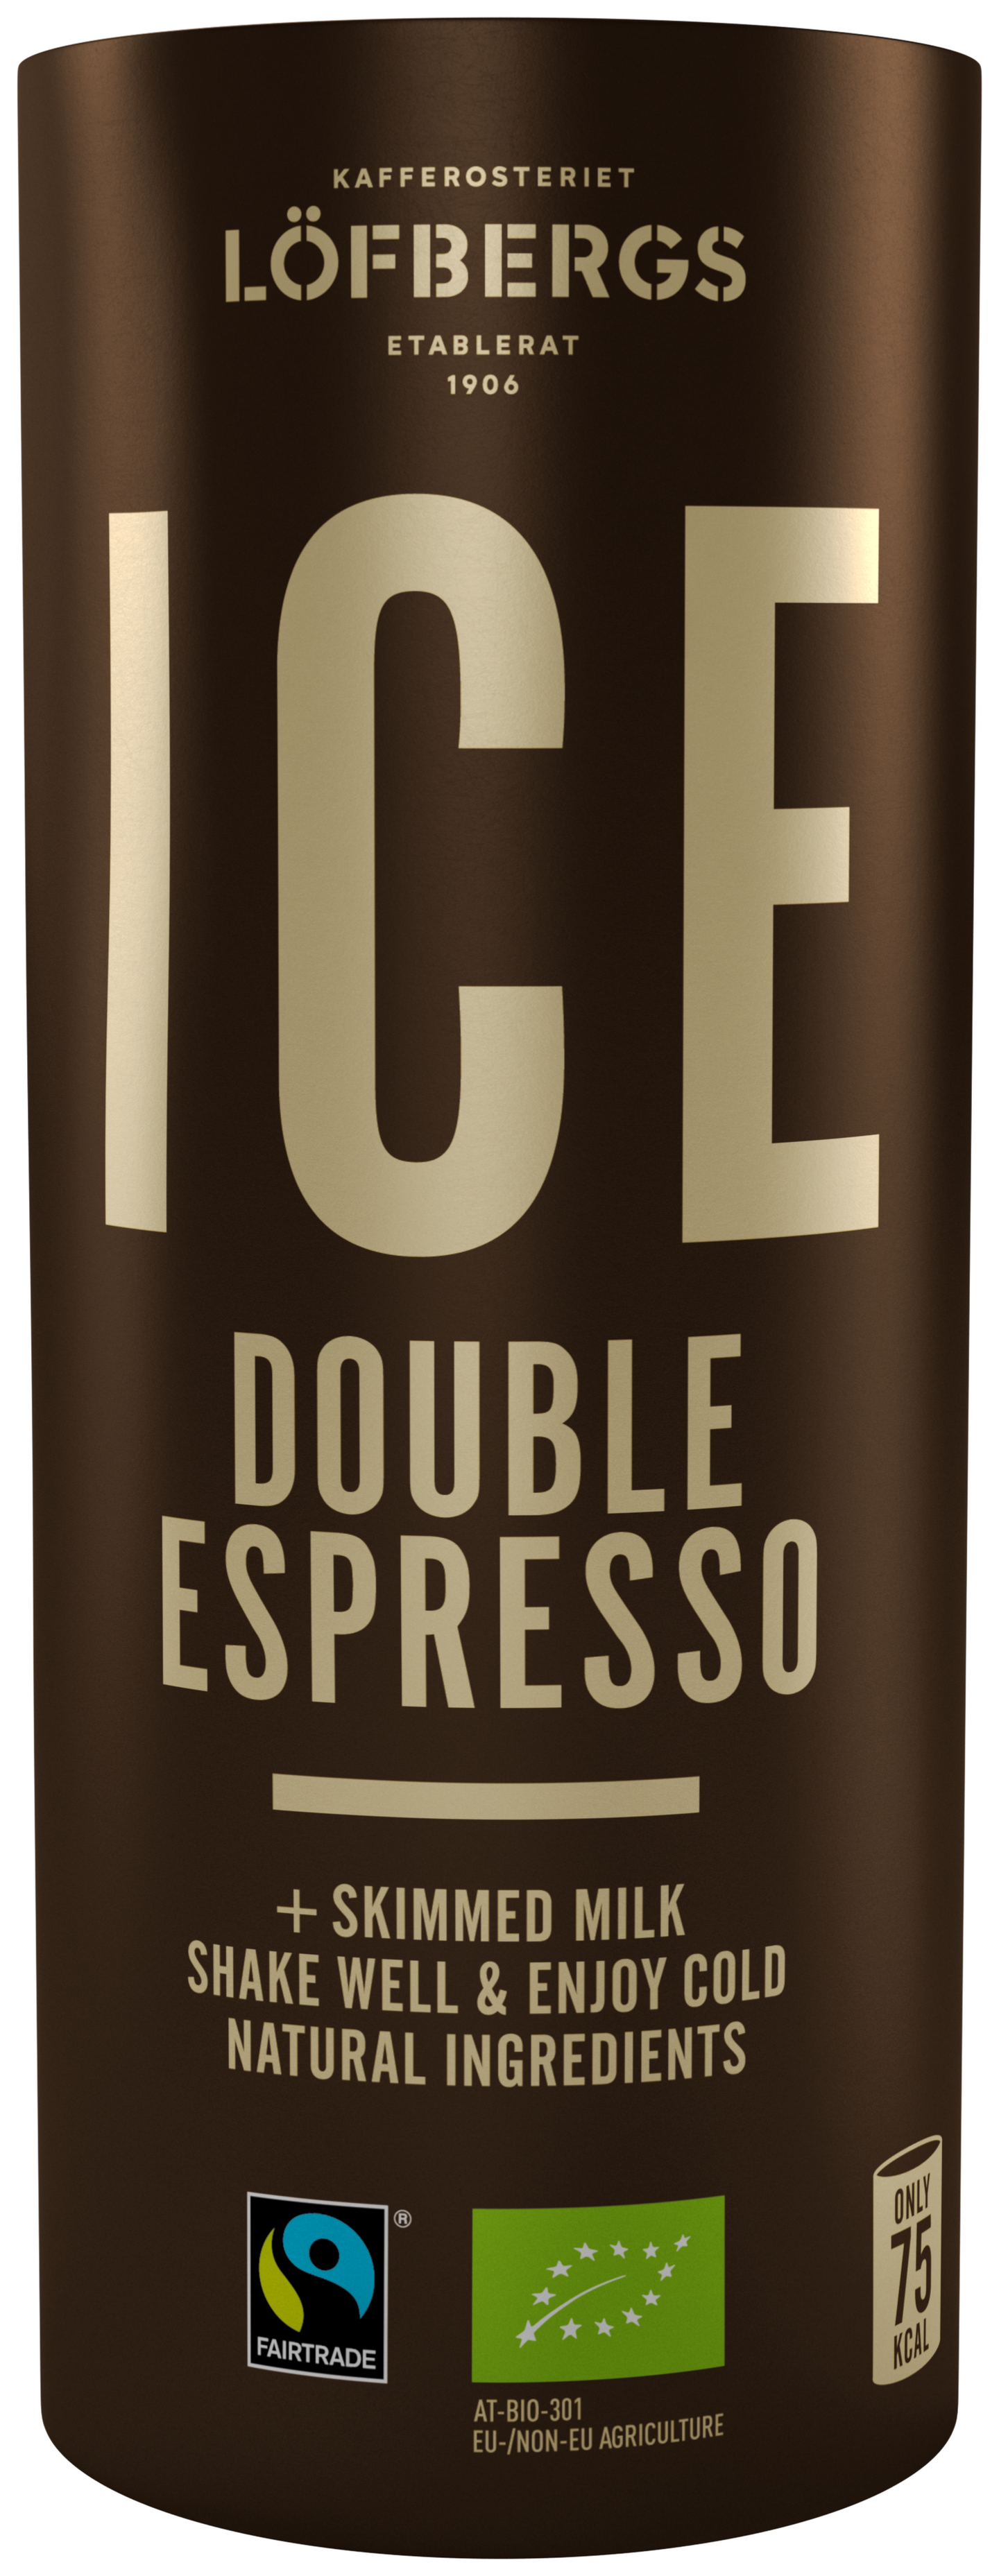 Löfbergs ICE Double Espresso jääkahvi 230 ml  Reilu kauppa, luomu